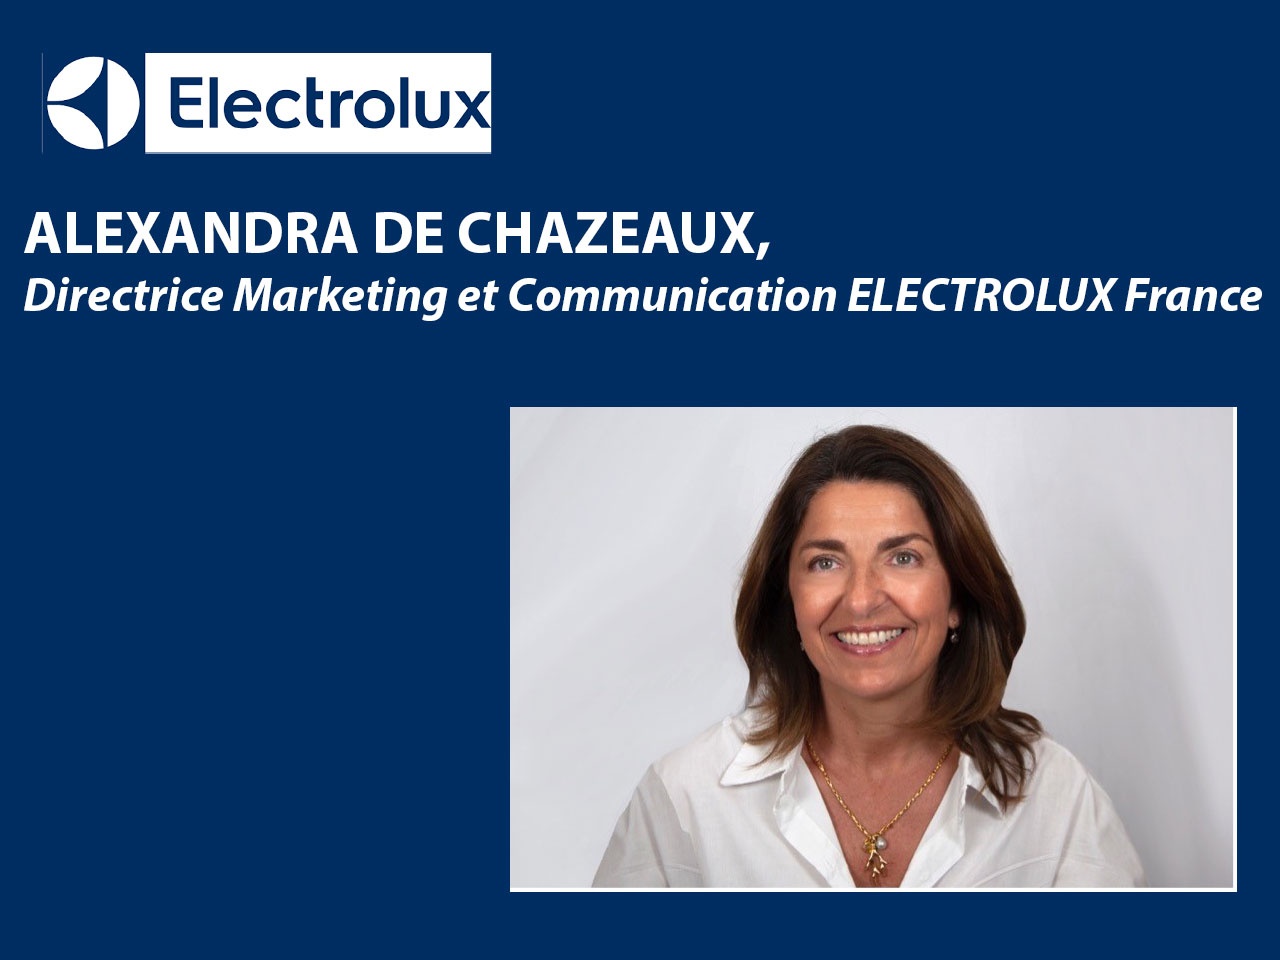 ELECTROLUX France a nommé Alexandra DE CHAZEAUX, Directrice Marketing et Communication